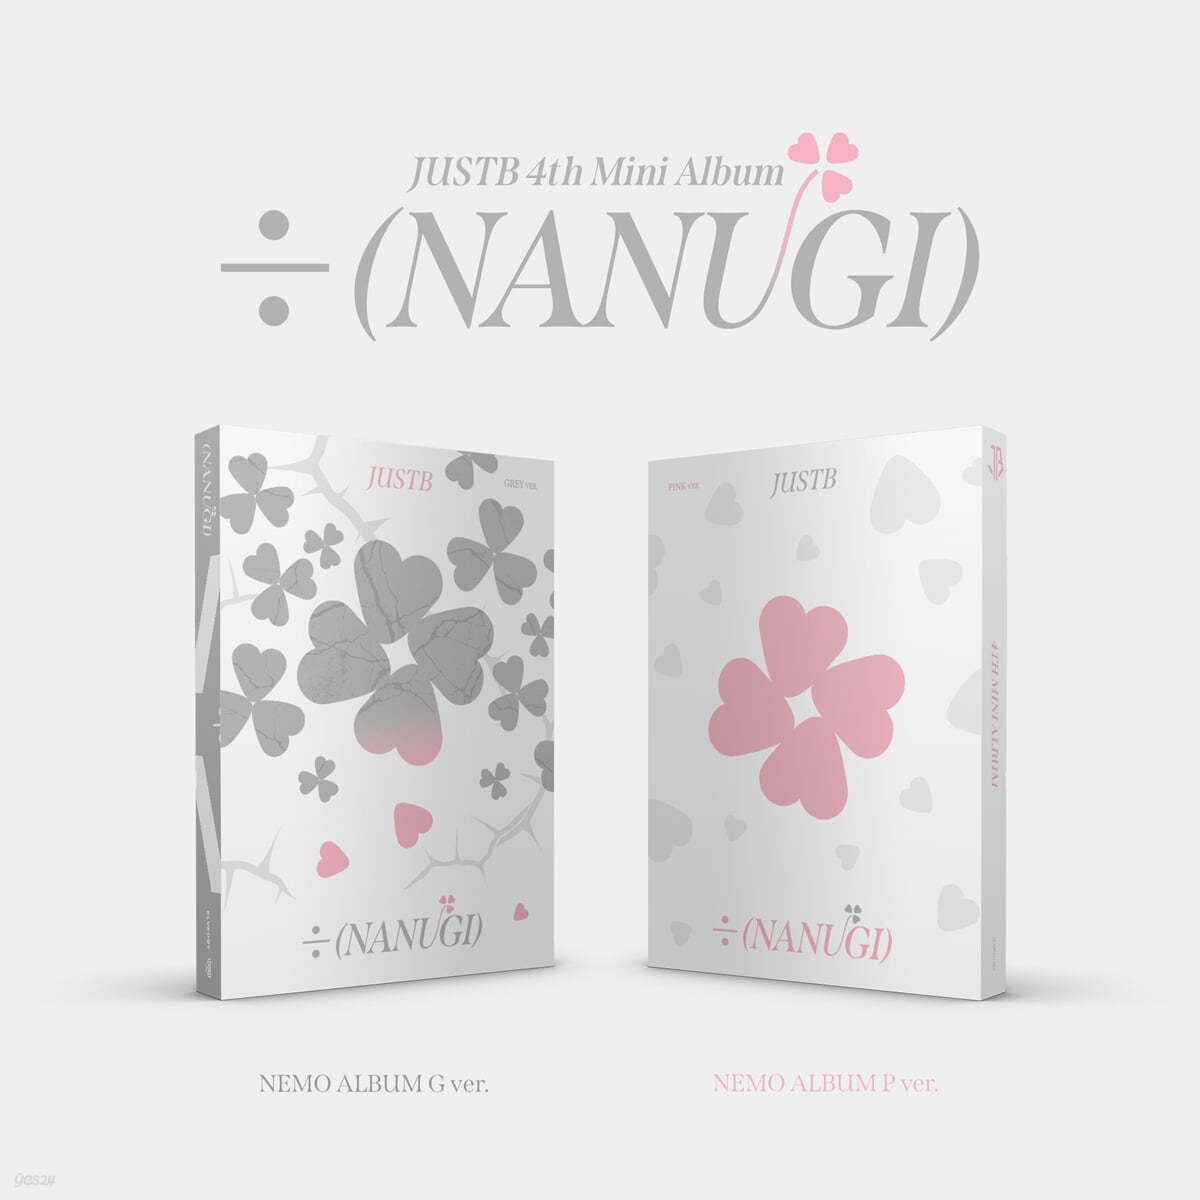 저스트비 (JUST B) - 미니앨범 4집 : ÷ (NANUGI) [Nemo Album] [SET]